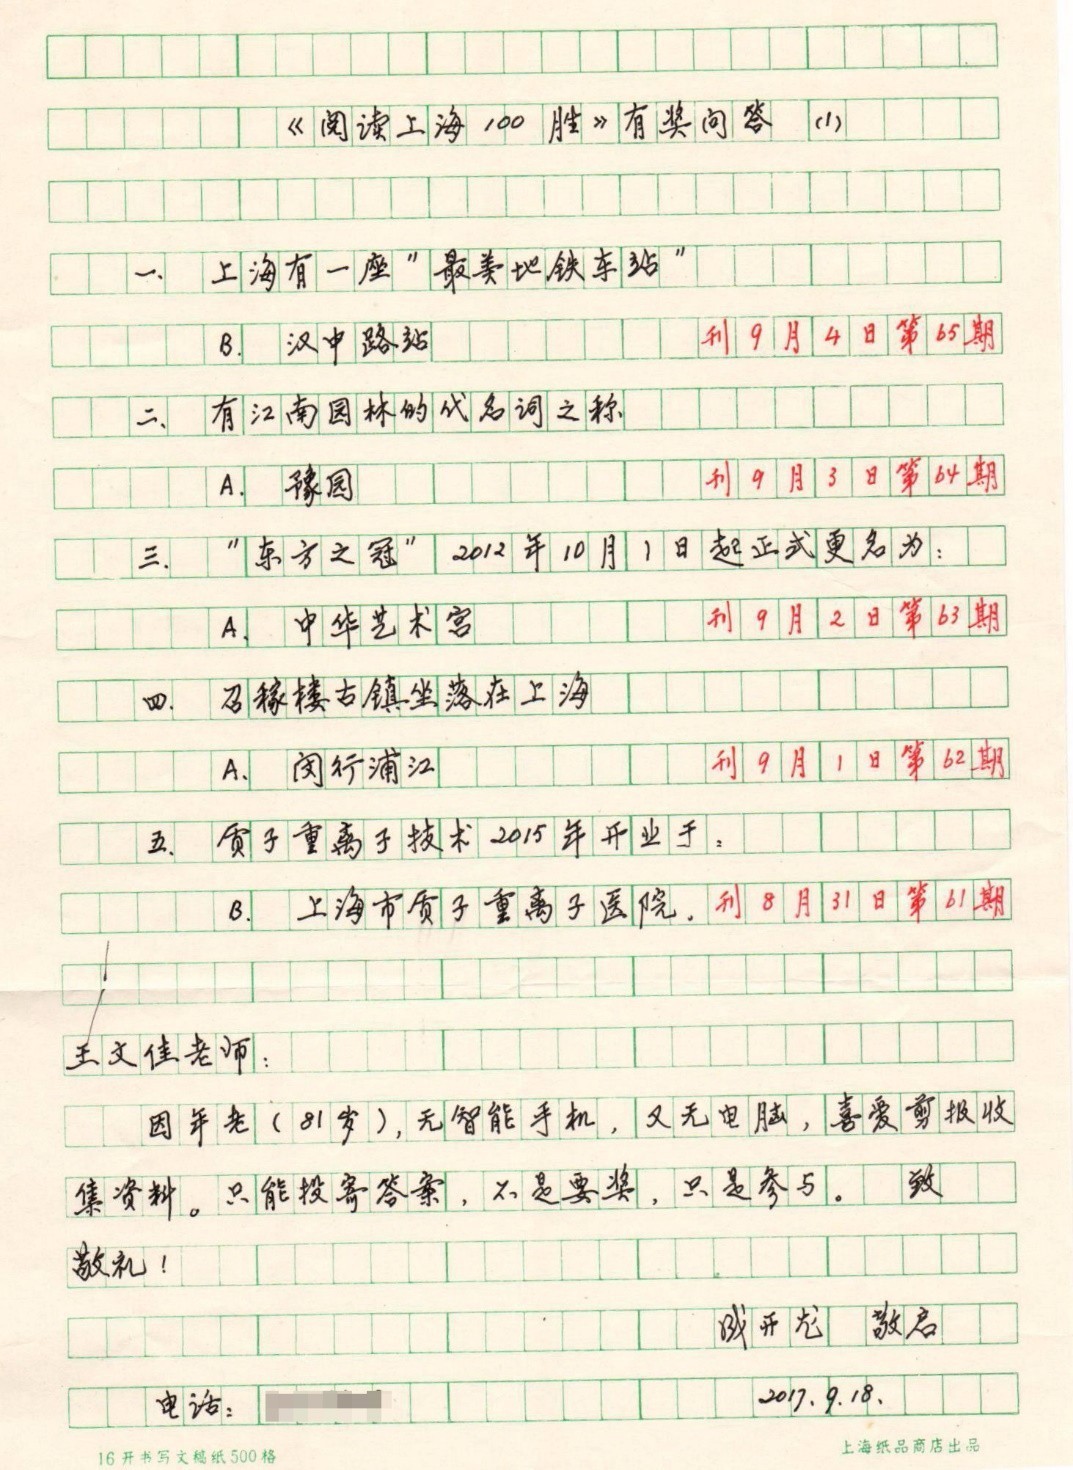 见字如面!一封老铁粉的答题信…《阅读上海10